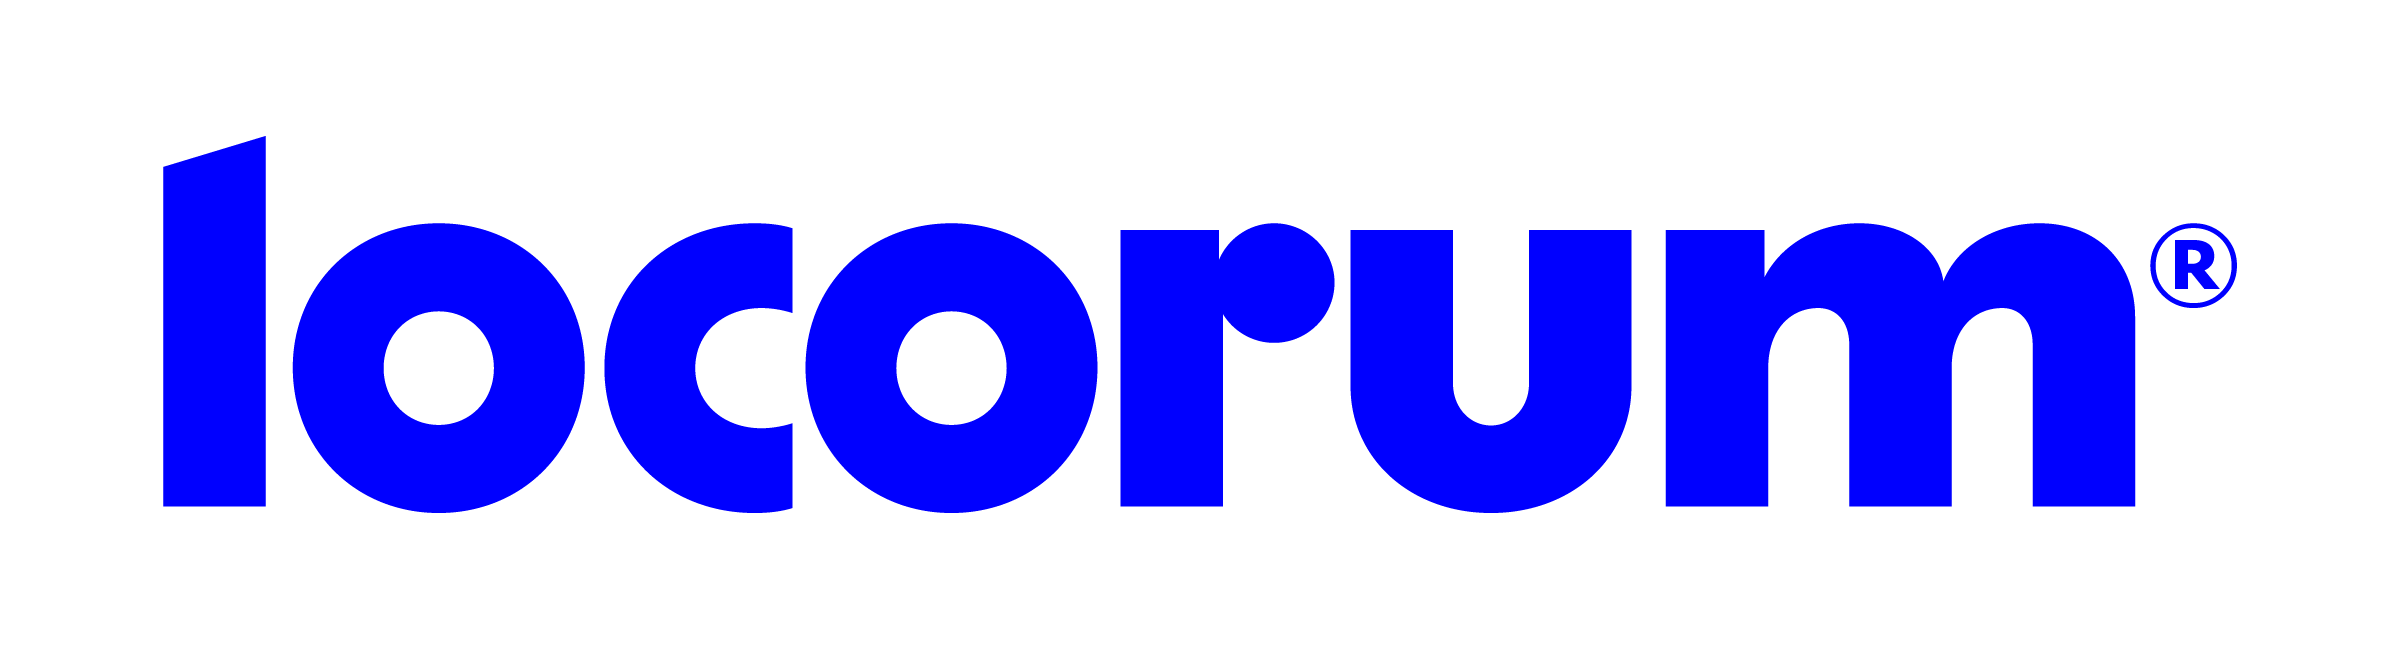 Locorum - Logo - Full-Colour